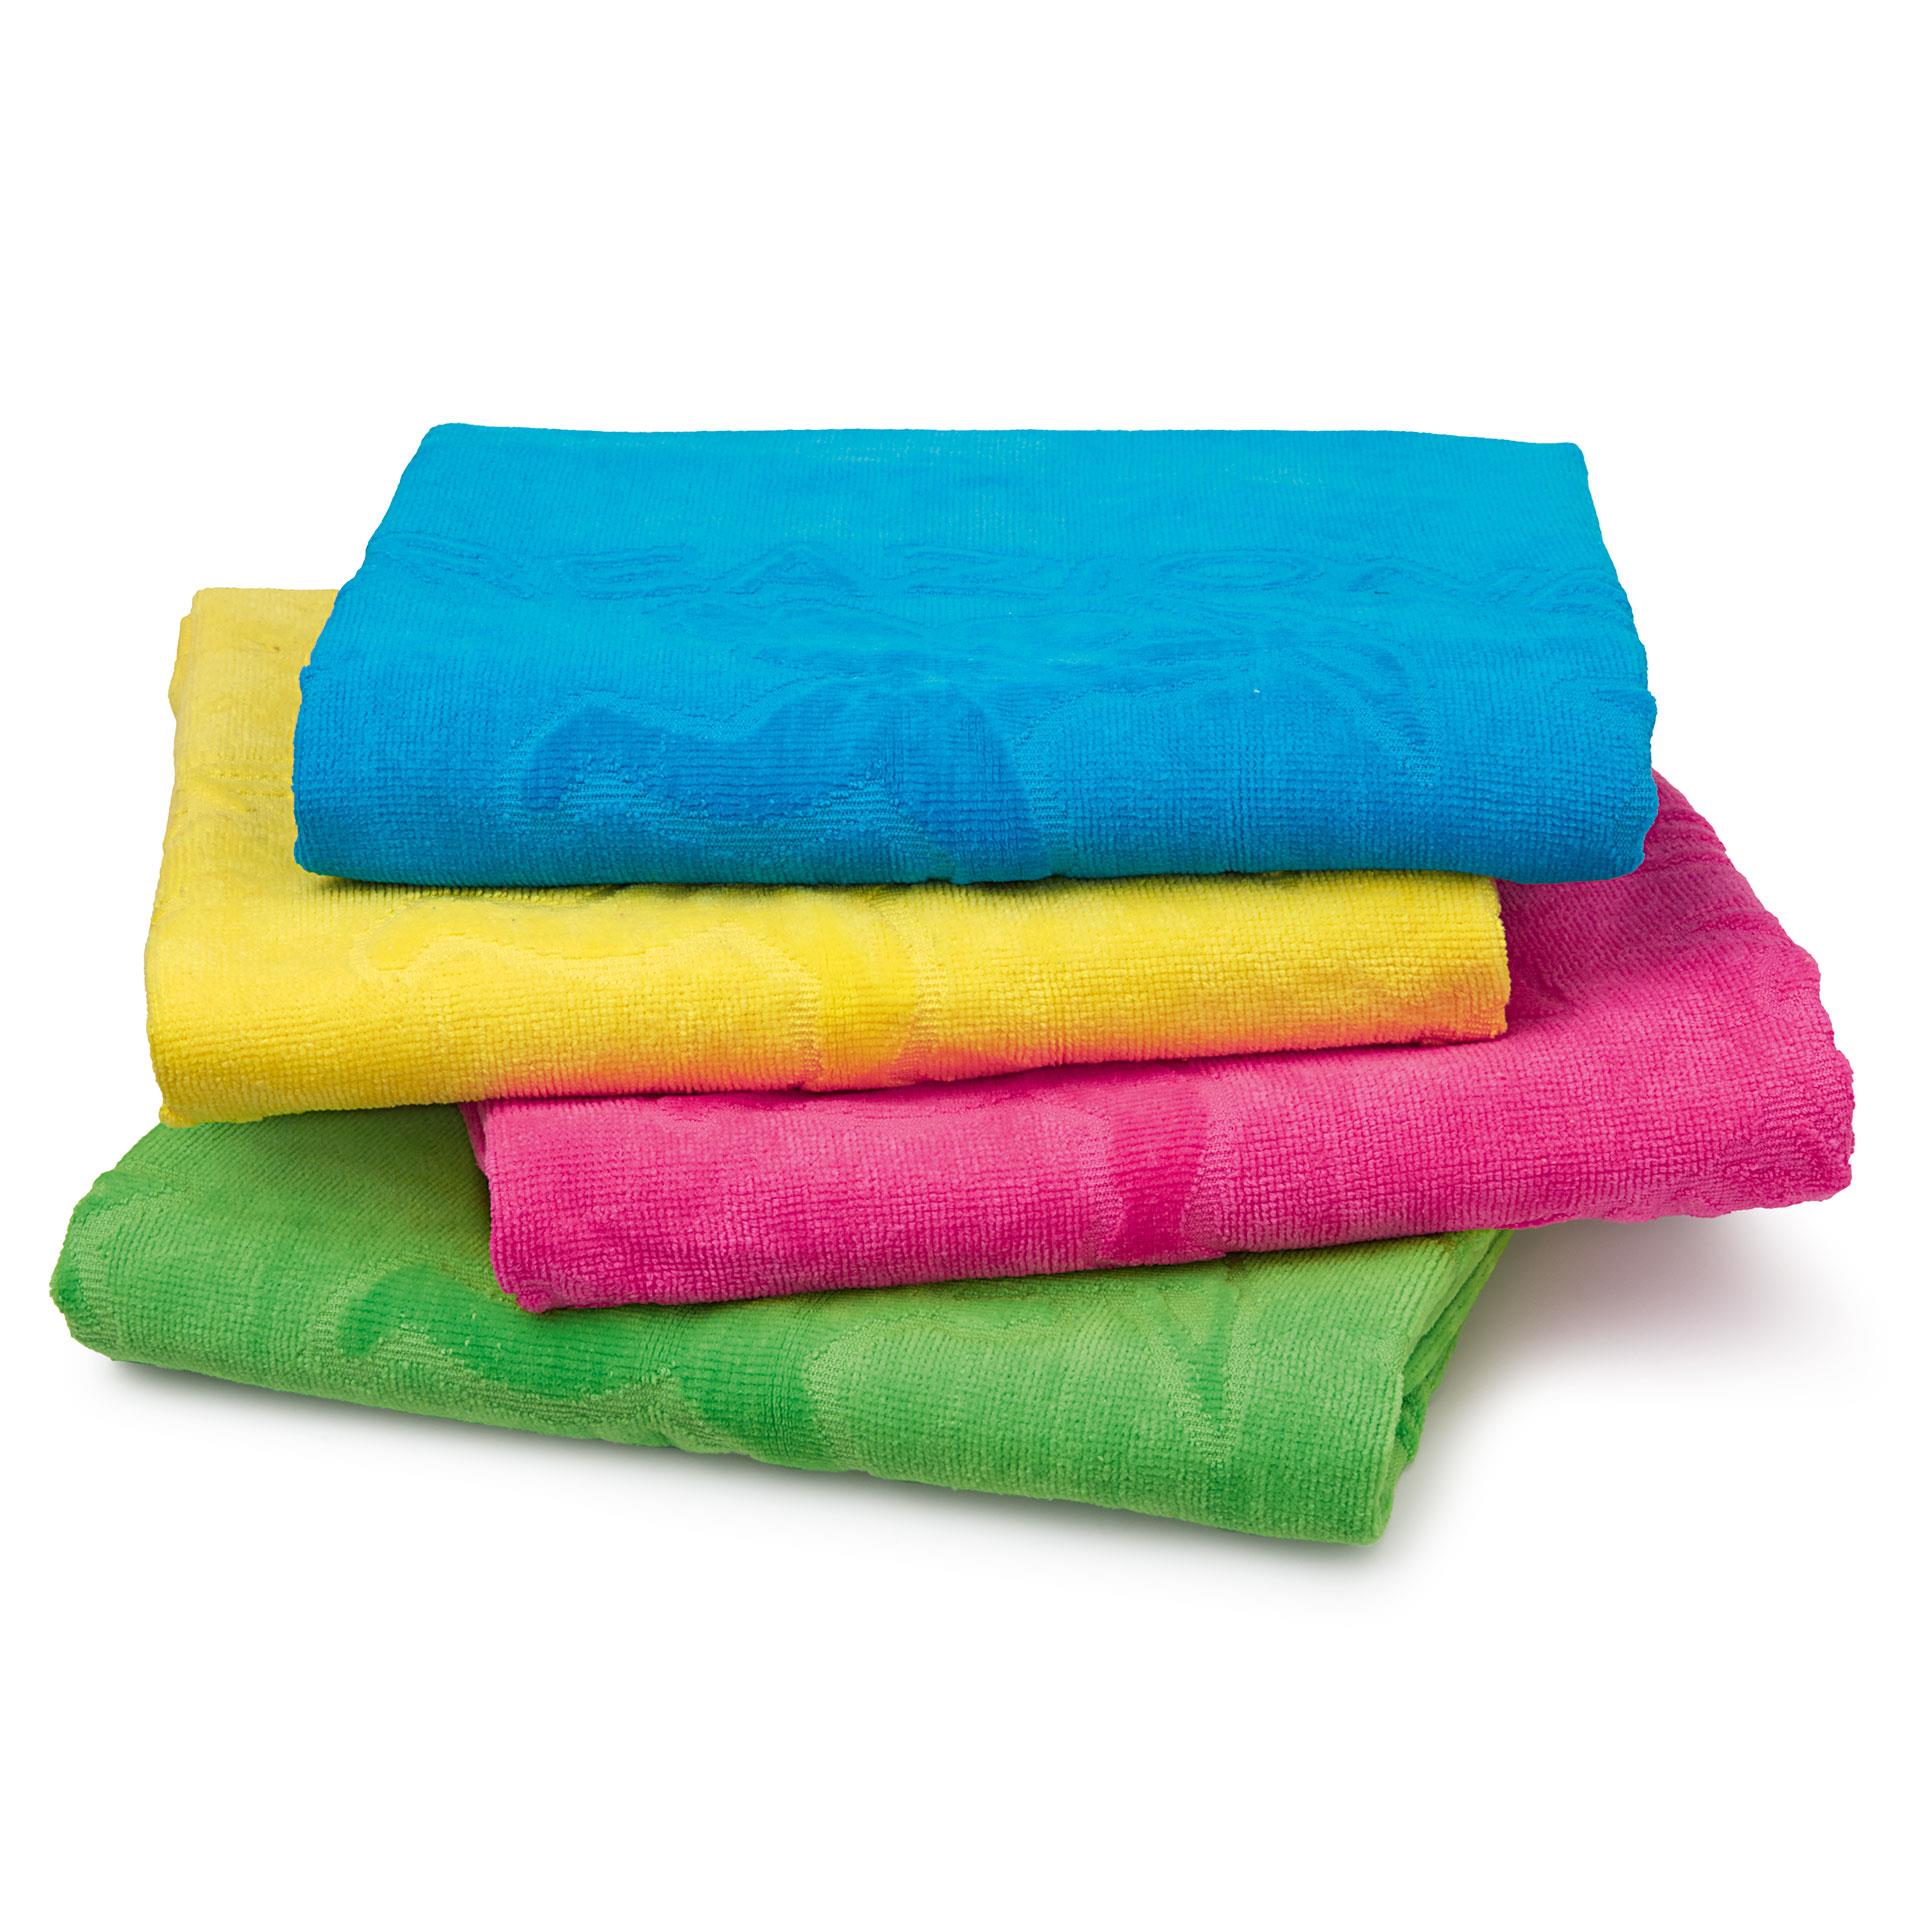 4 asciugamani di spugna, colorati